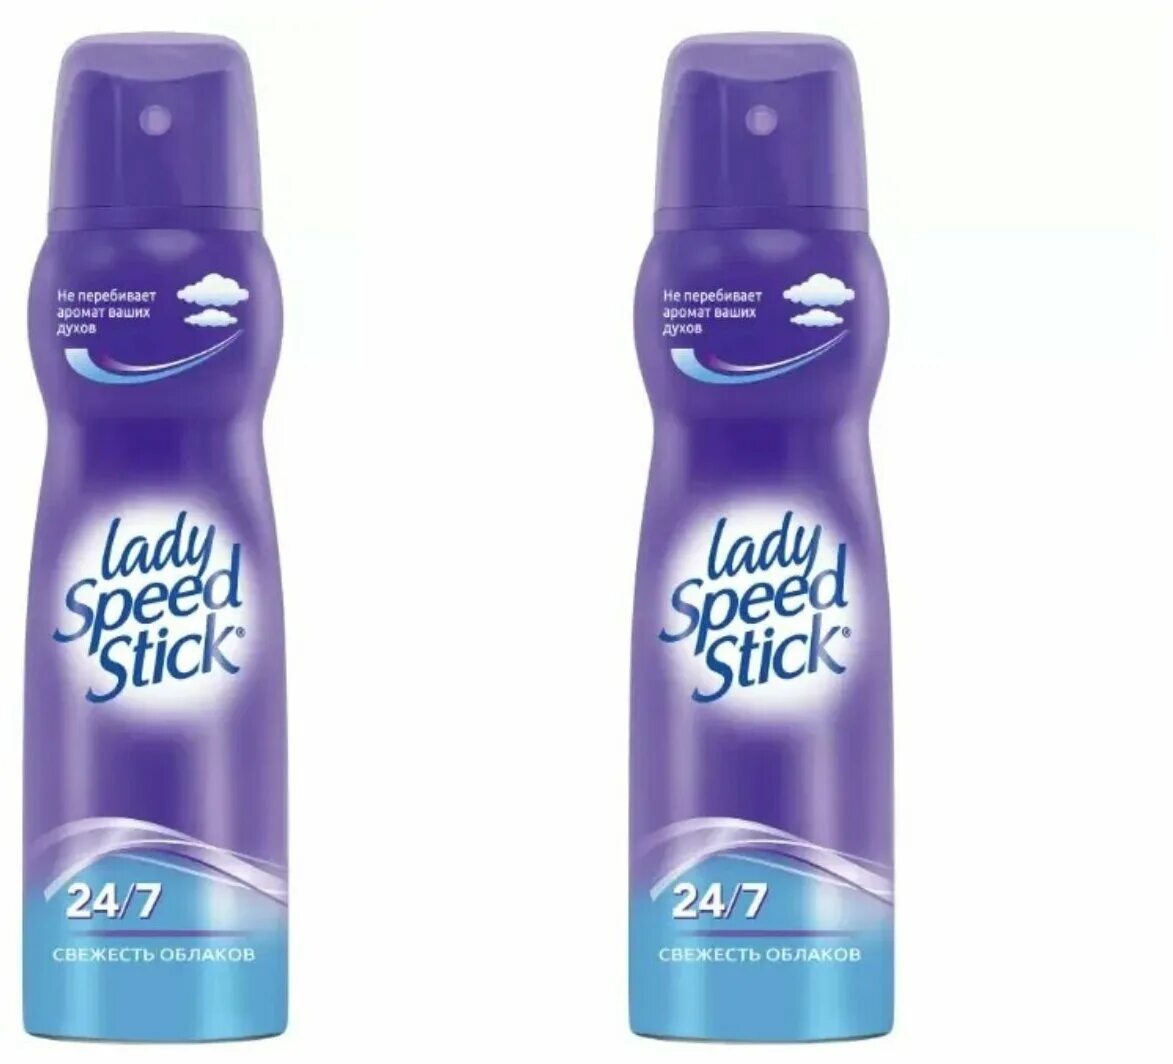 Спрей стикам. Дезодорант Lady Speed Stick спрей 150мл. Lady Speed Stick свежесть облаков. Lady Speed Stick дезодорант-спрей 150мл Derma + витамин е. Lady Speed Stick biocontrol.